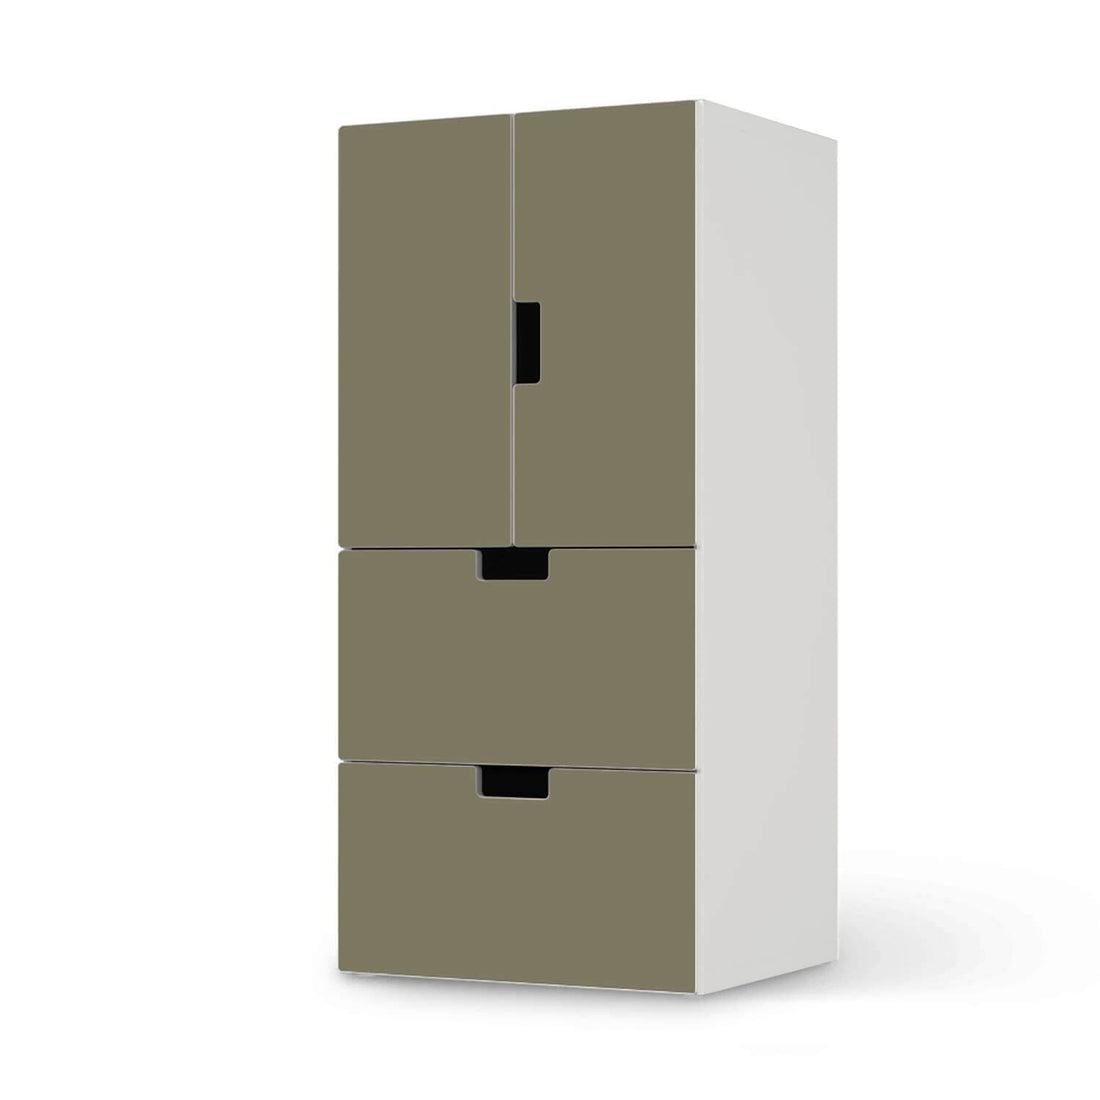 Möbelfolie Braungrau Light - IKEA Stuva kombiniert - 2 Schubladen und 2 kleine Türen  - weiss